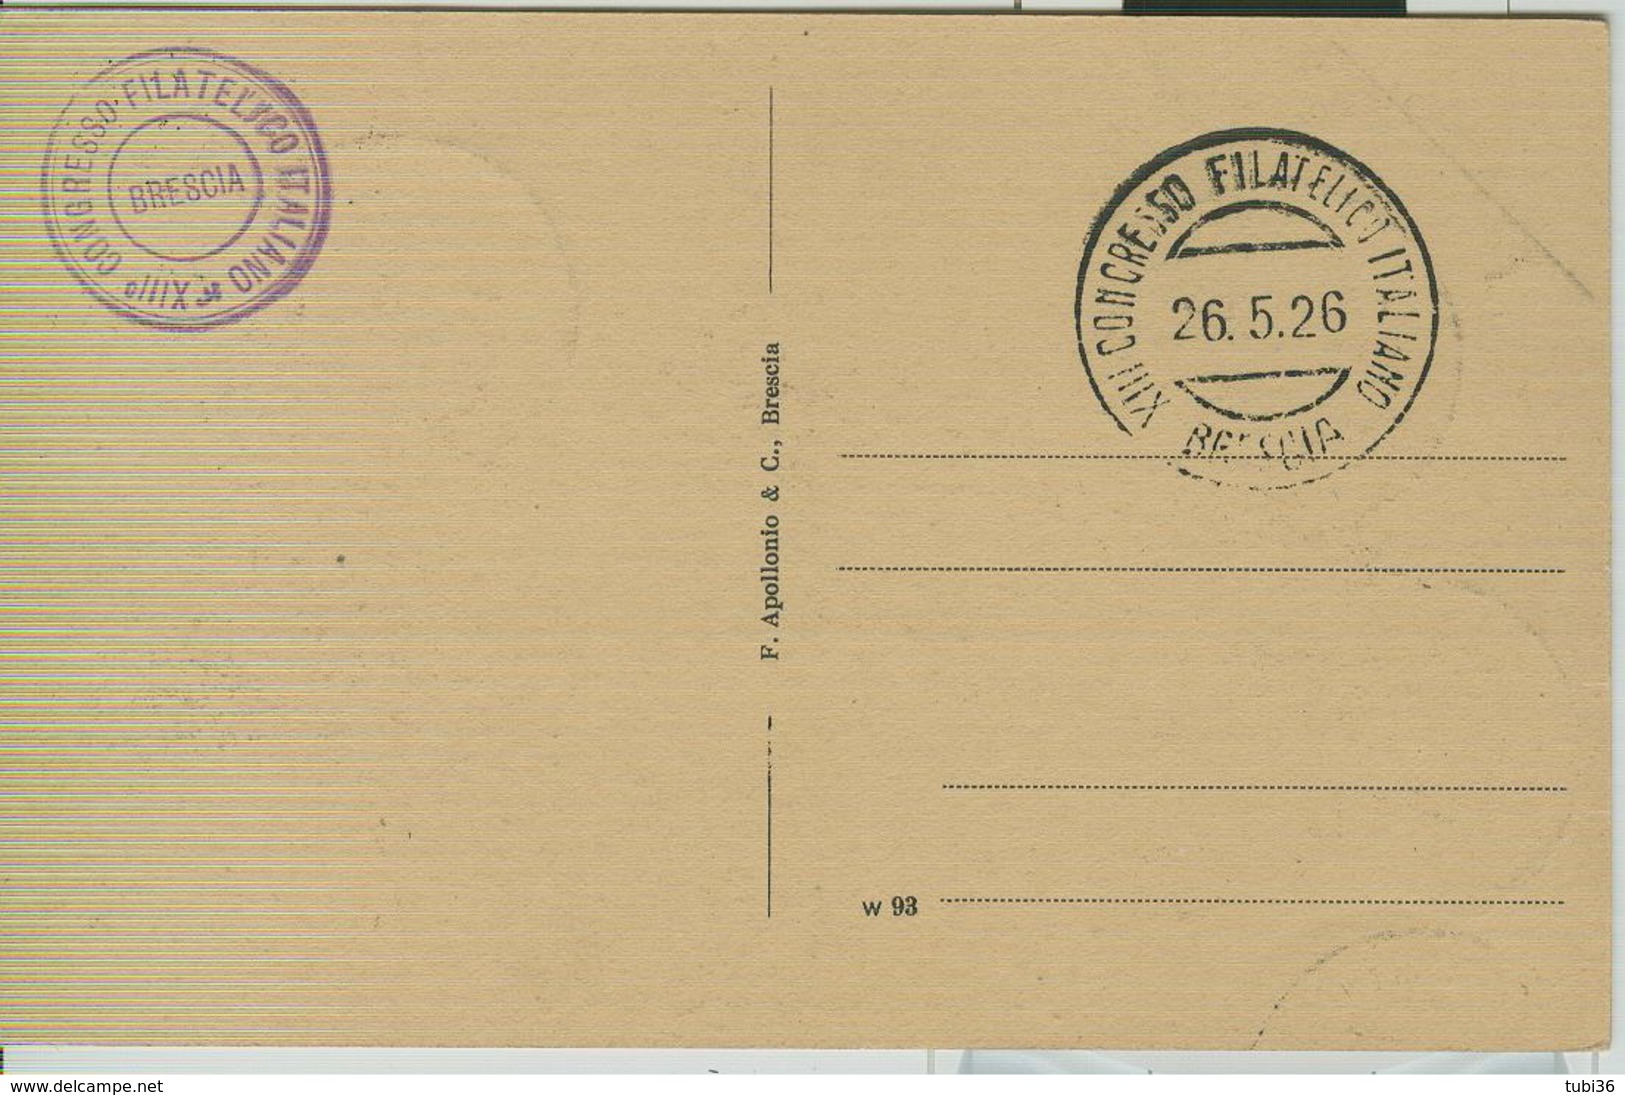 "XIII CONGRESSO FILATELICO ITALIANO",BRESCIA,ANNULLO SPECIALE ,1926,CARTOLINA B/N MONUMENTO AD ARNALDO,BRESCIA, - Esposizioni Filateliche